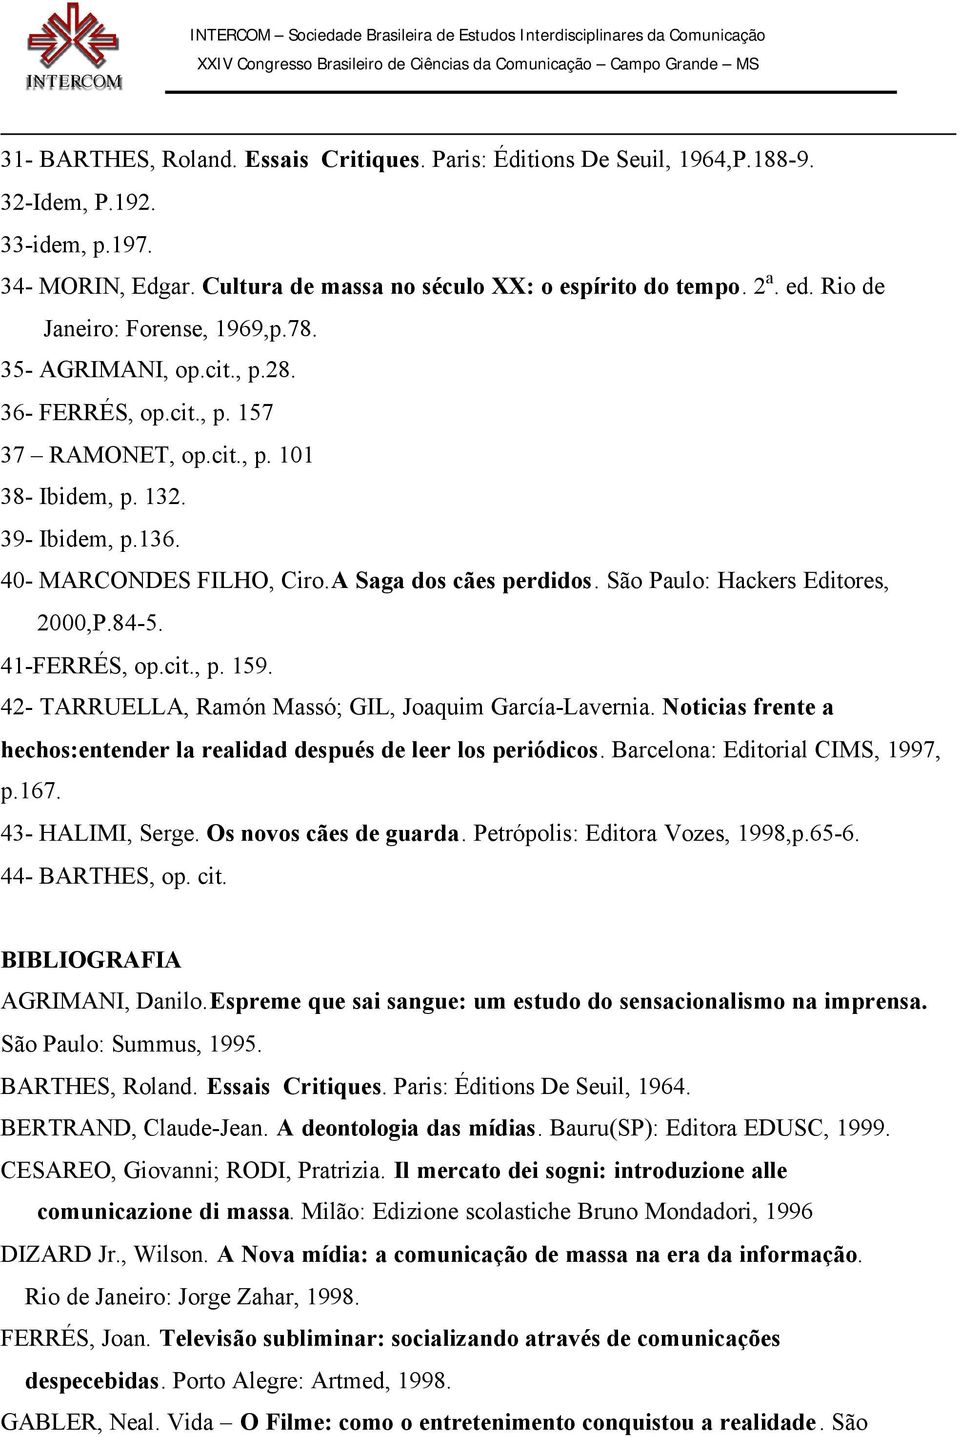 A Saga dos cães perdidos. São Paulo: Hackers Editores, 2000,P.84-5. 41-FERRÉS, op.cit., p. 159. 42- TARRUELLA, Ramón Massó; GIL, Joaquim García-Lavernia.